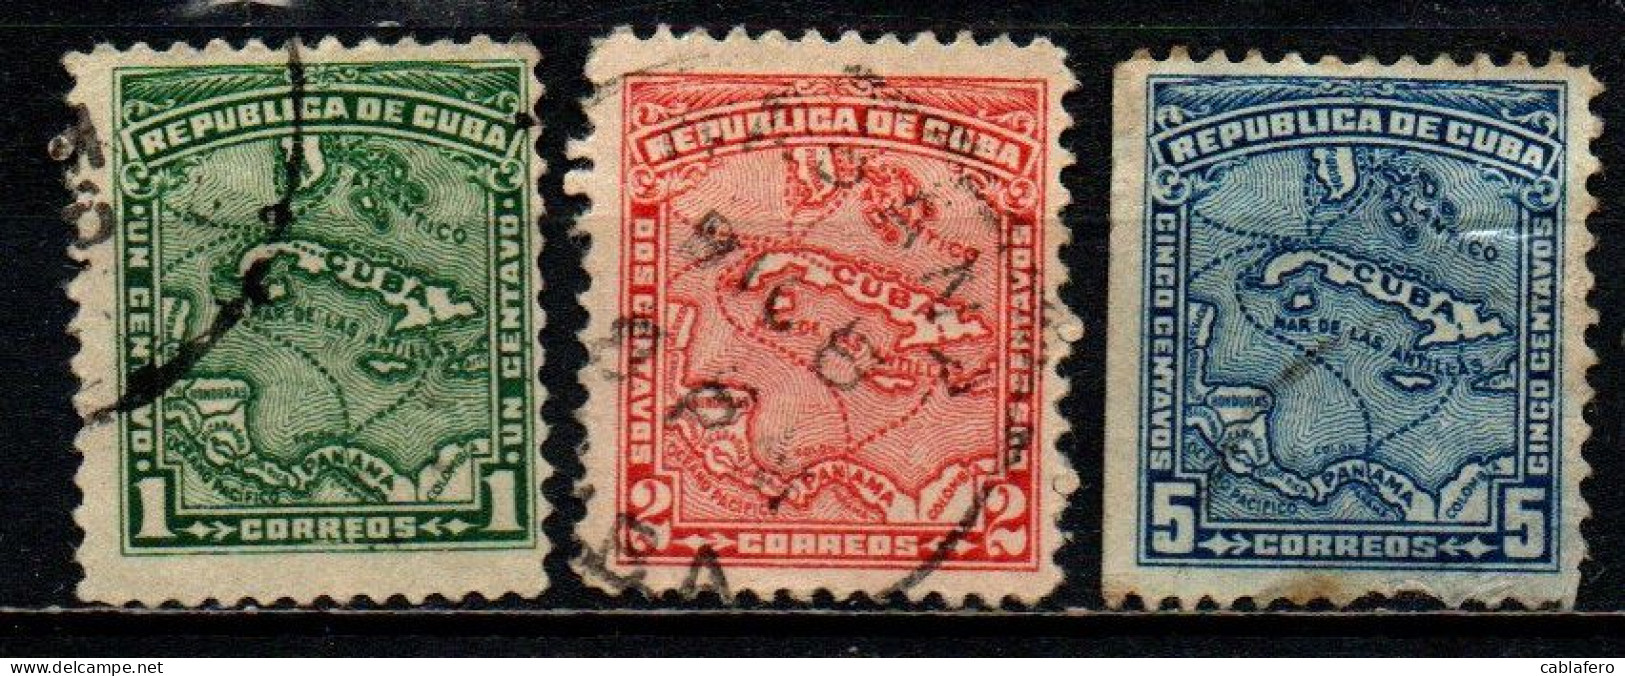 CUBA - 1914 - MAPPA DELL'ISOLA DI CUBA - USATI - Used Stamps